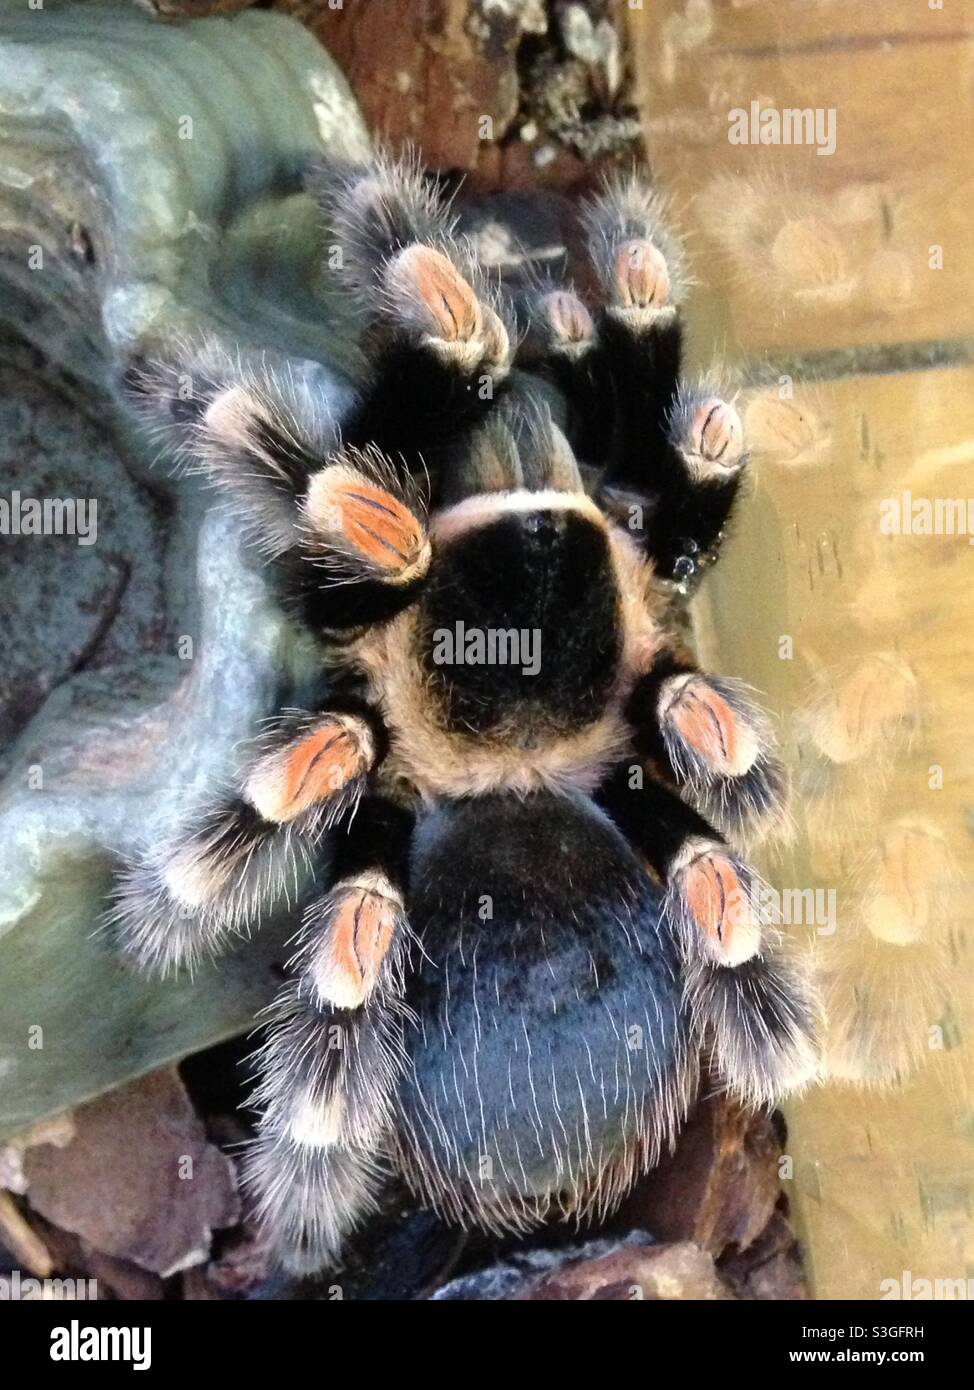 Red-kneed tarantula Stock Photo